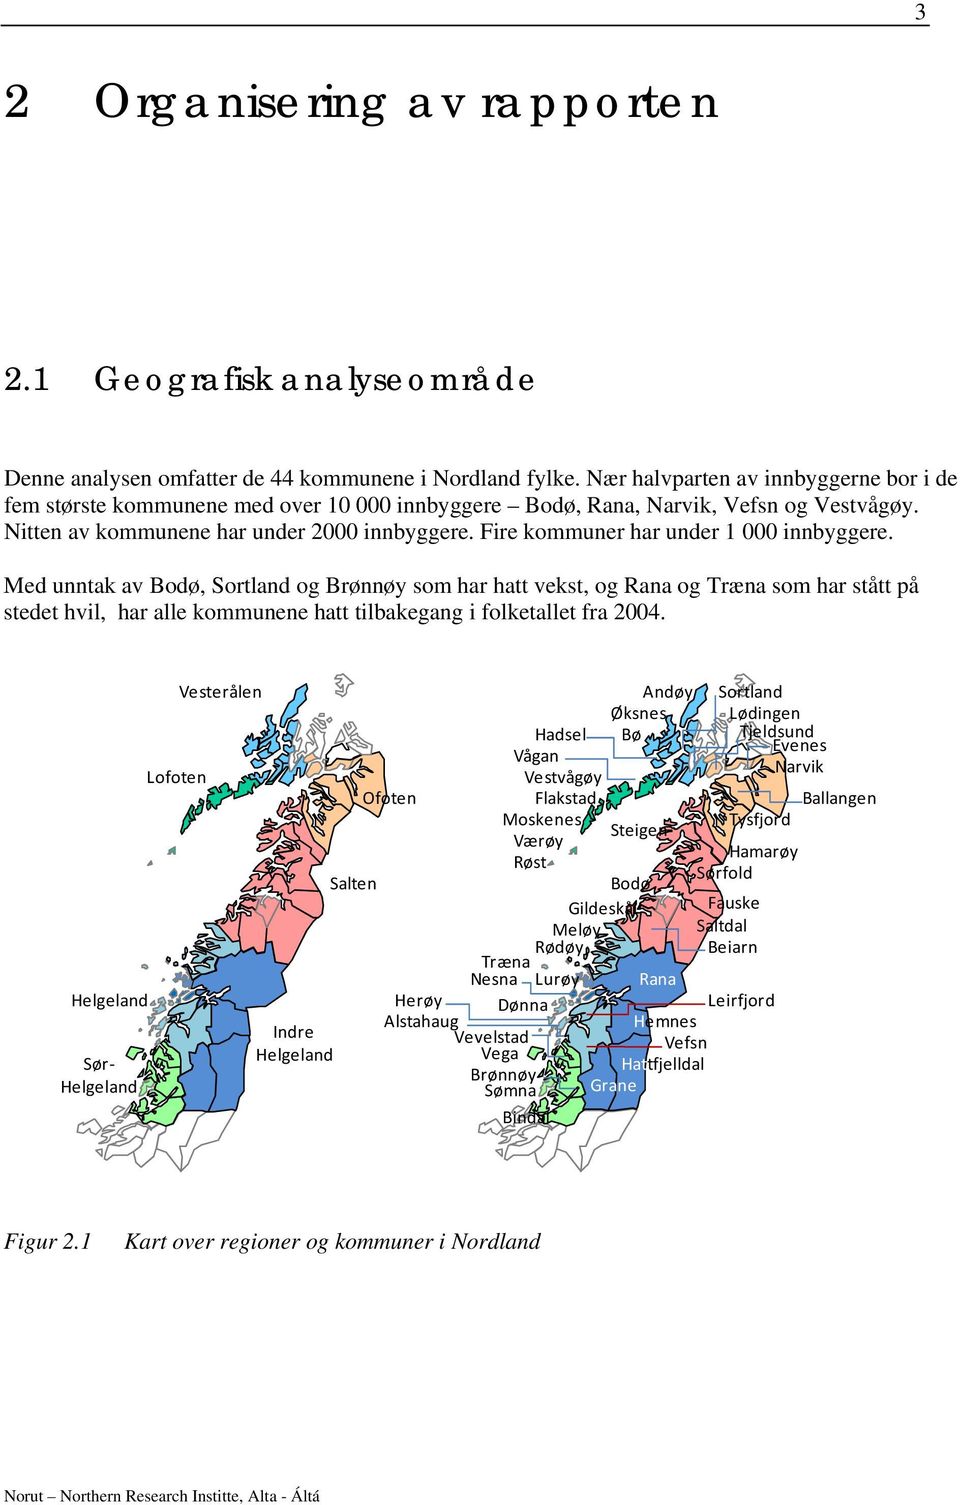 Fire kommuner har under 1 000 innbyggere. Med unntak av, og Brønnøy som har hatt vekst, og Rana og Træna som har stått på stedet hvil, har alle kommunene hatt tilbakegang i folketallet fra 2004.